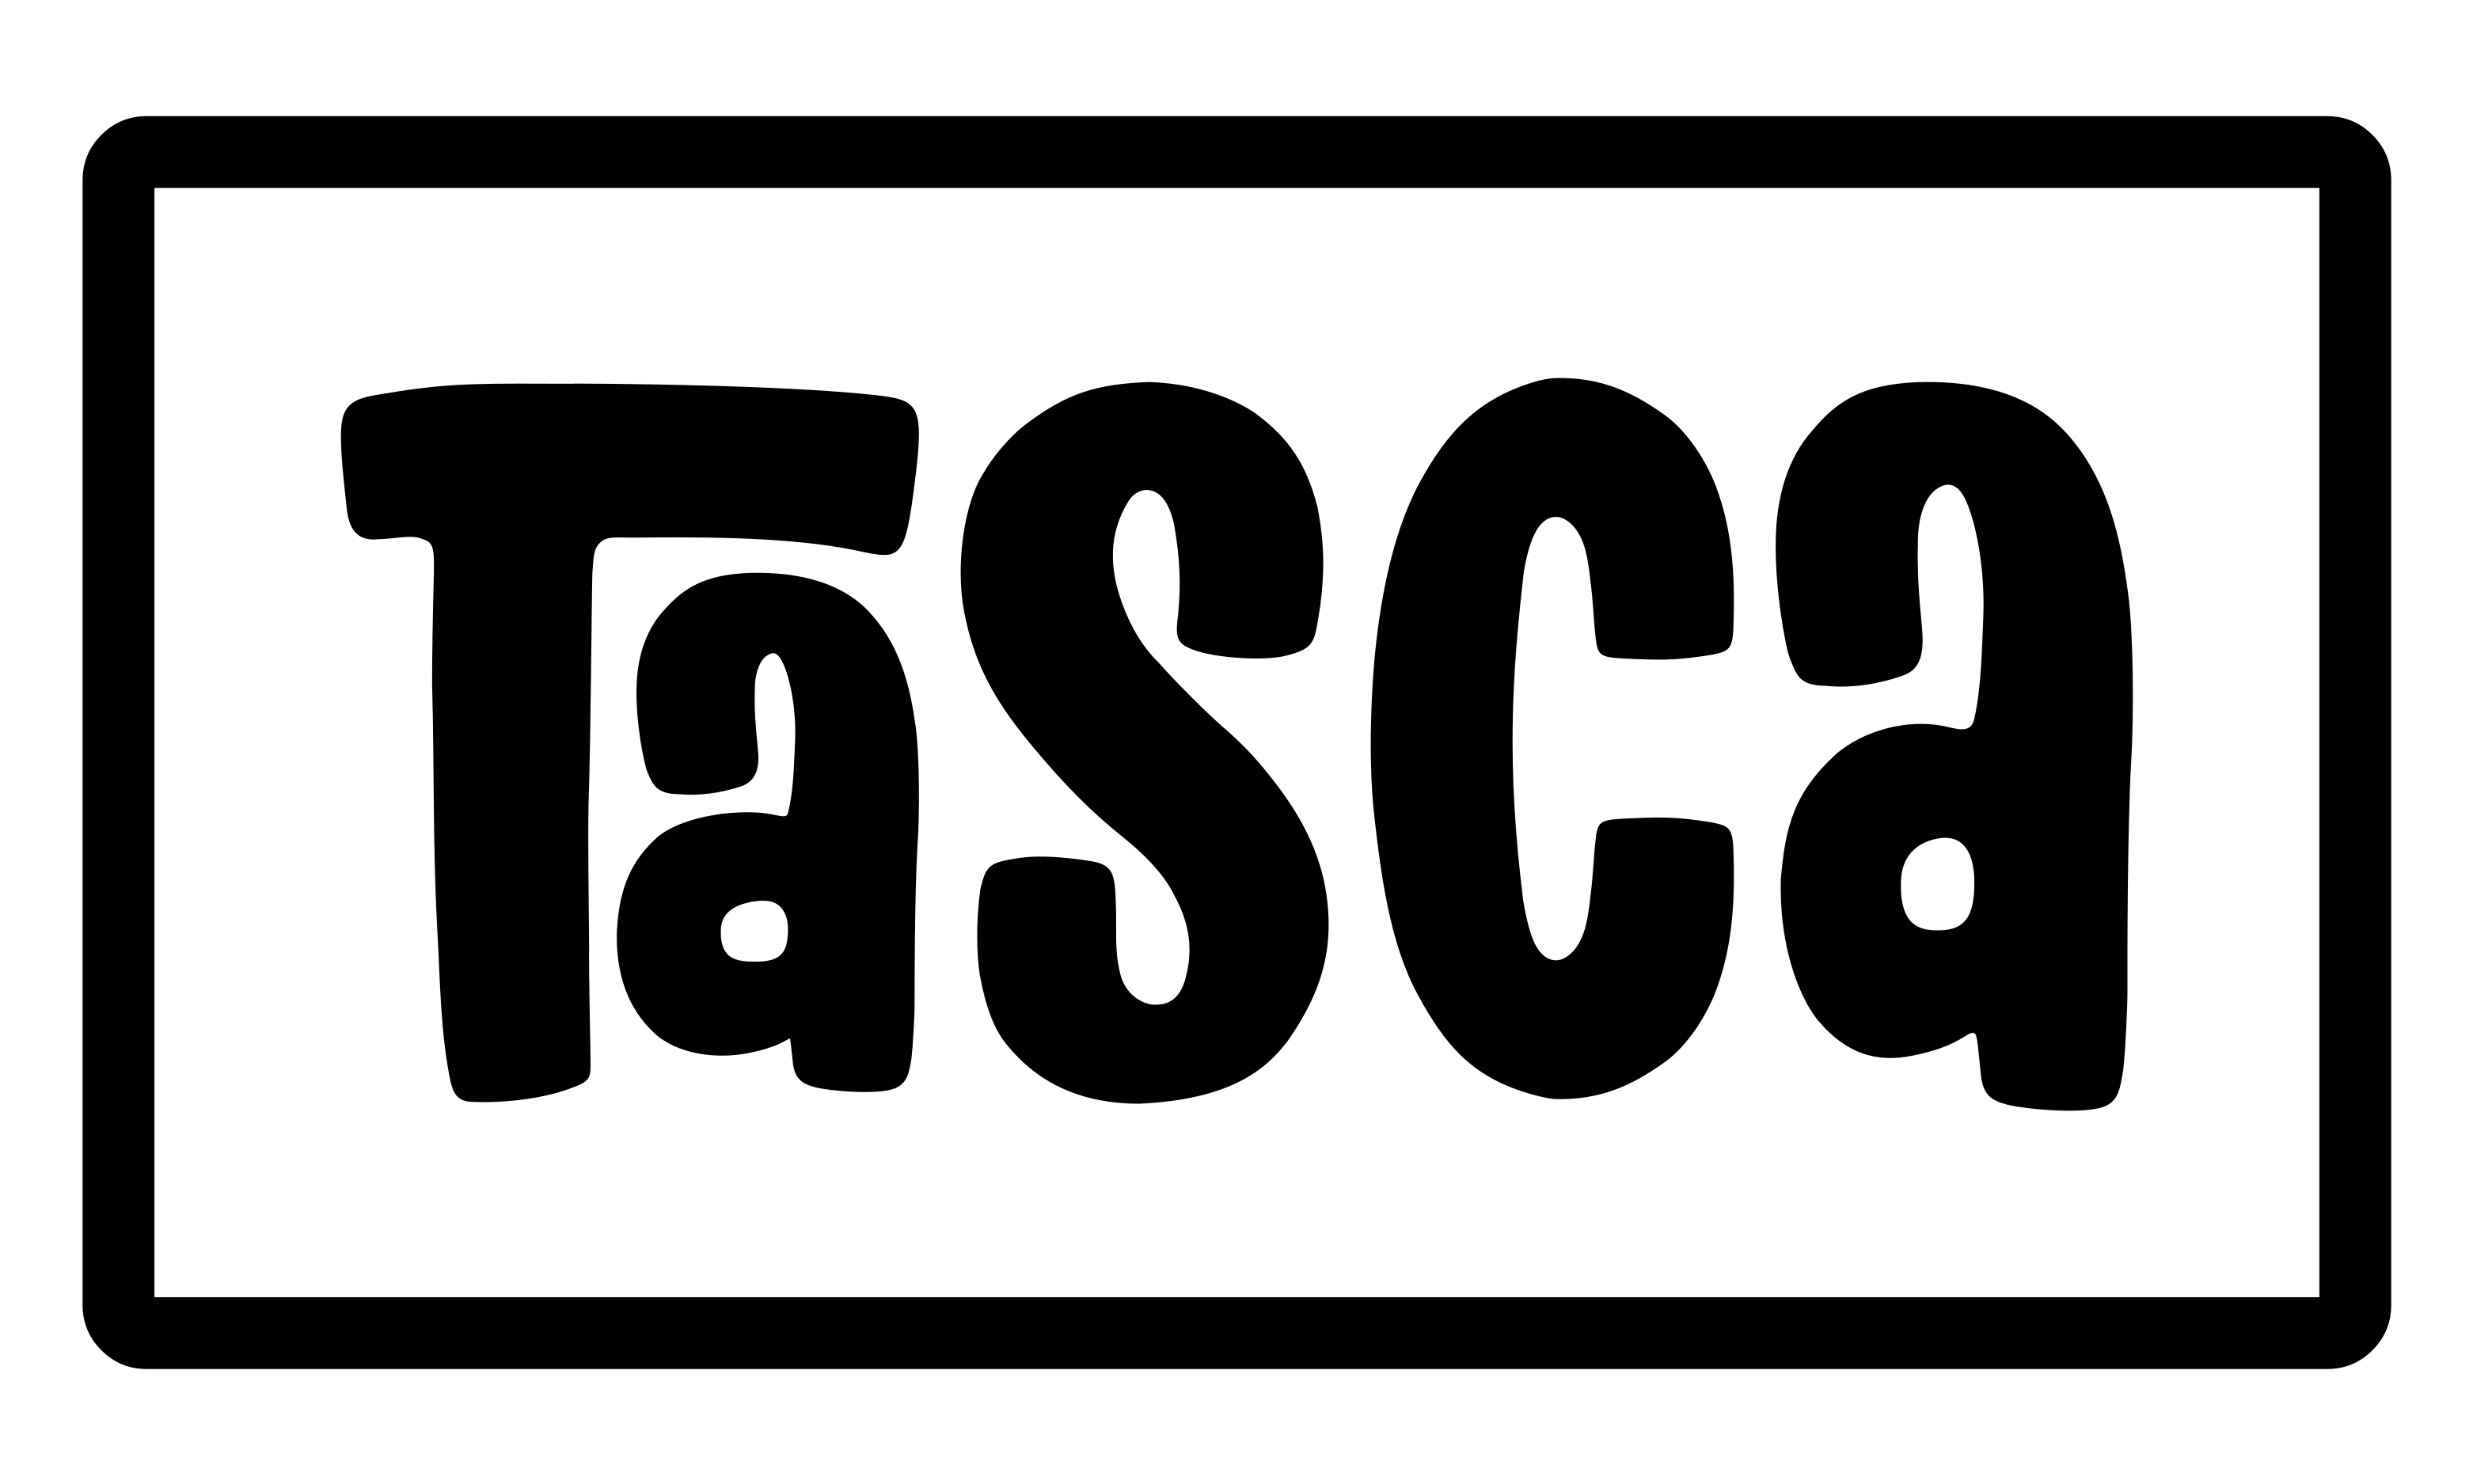 Tasca Castricum